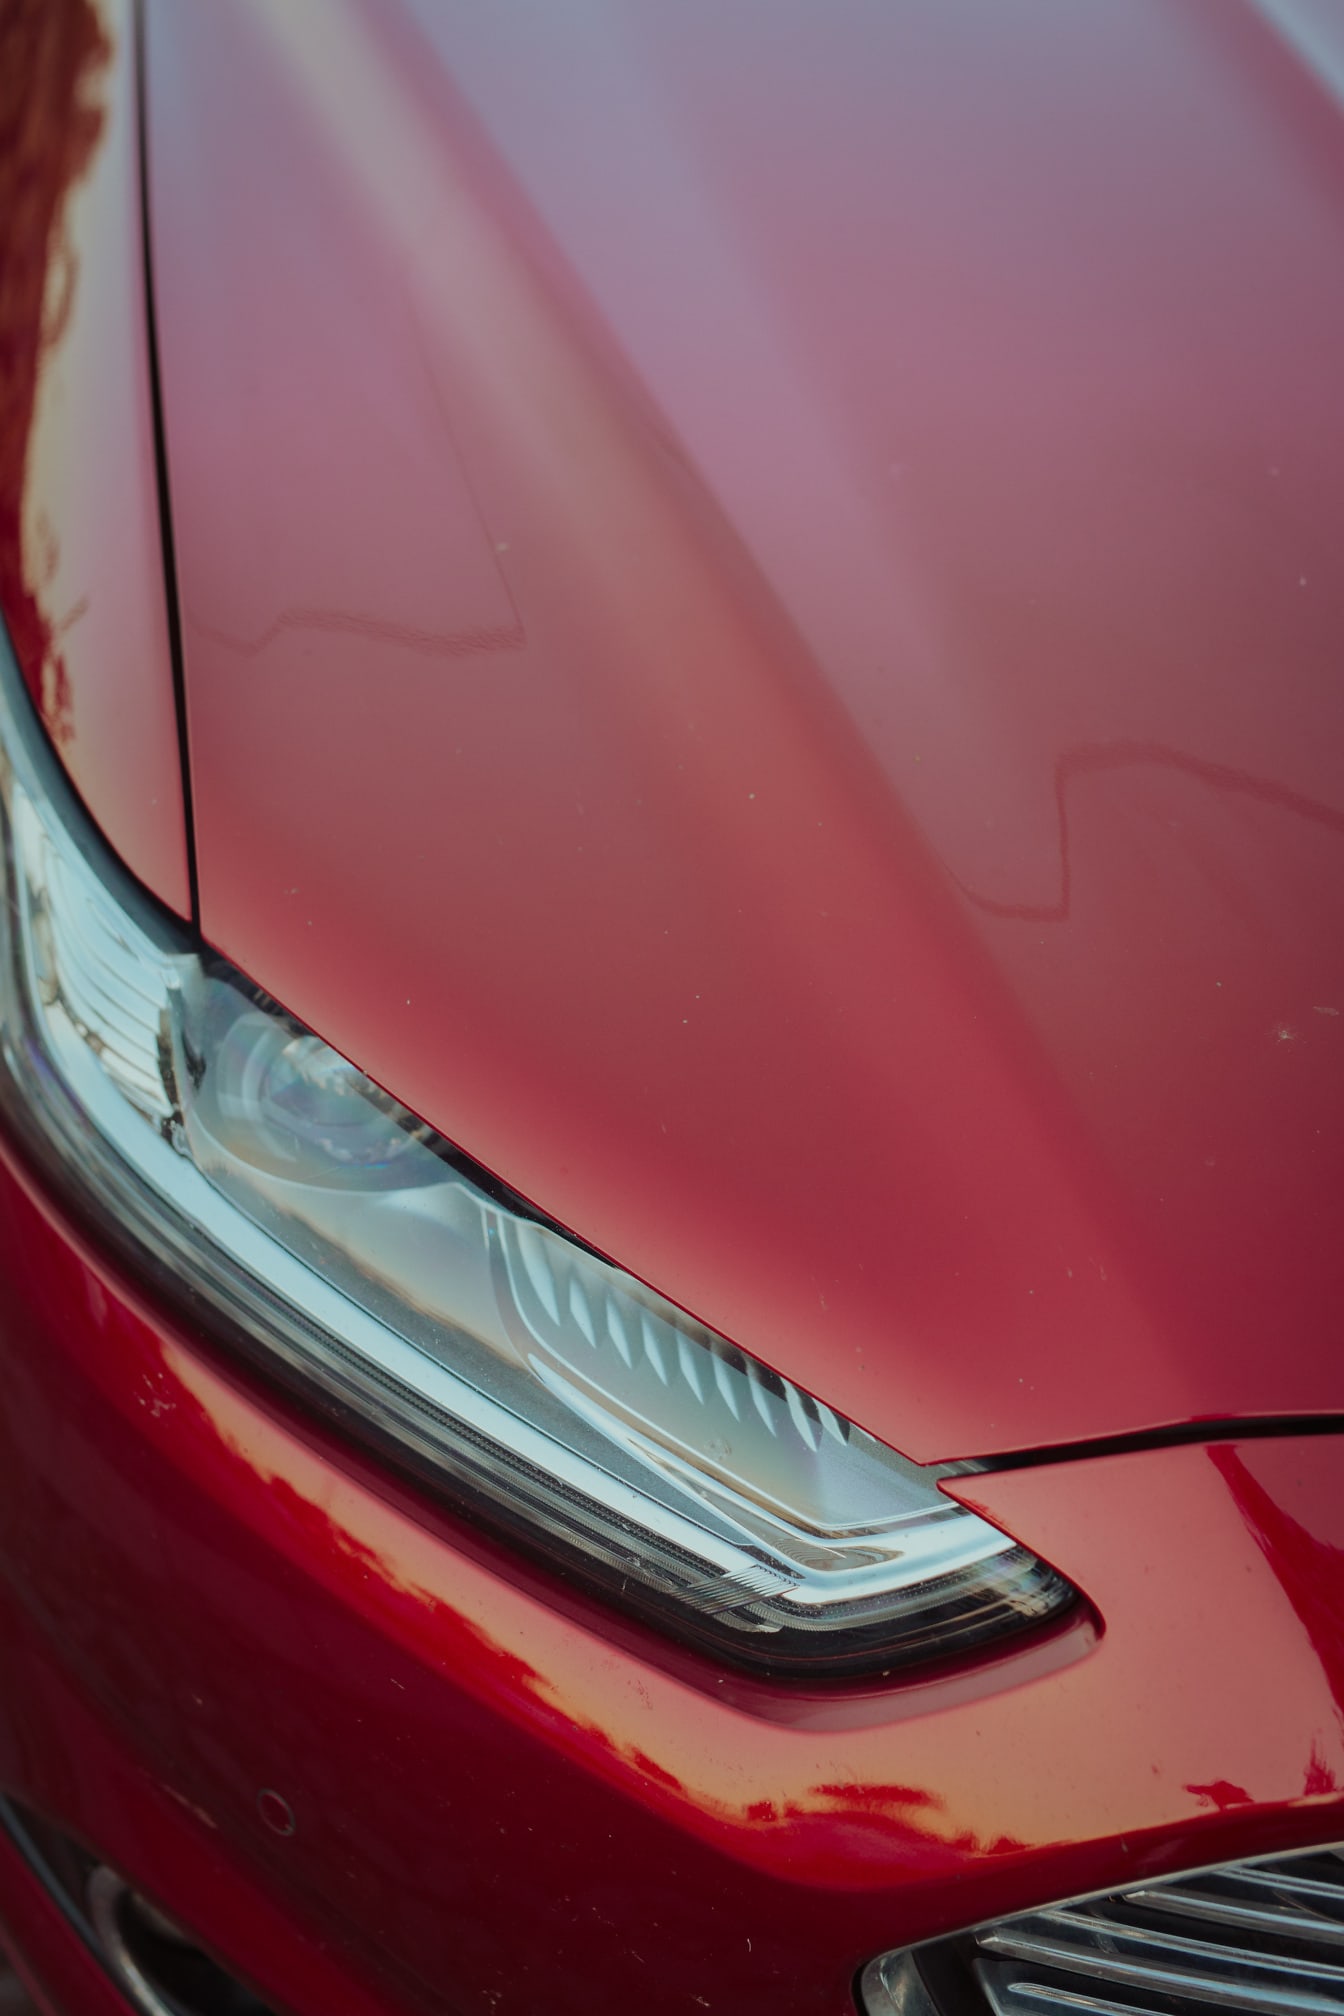 Tampilan close-up lampu depan mobil sport metalik merah tua